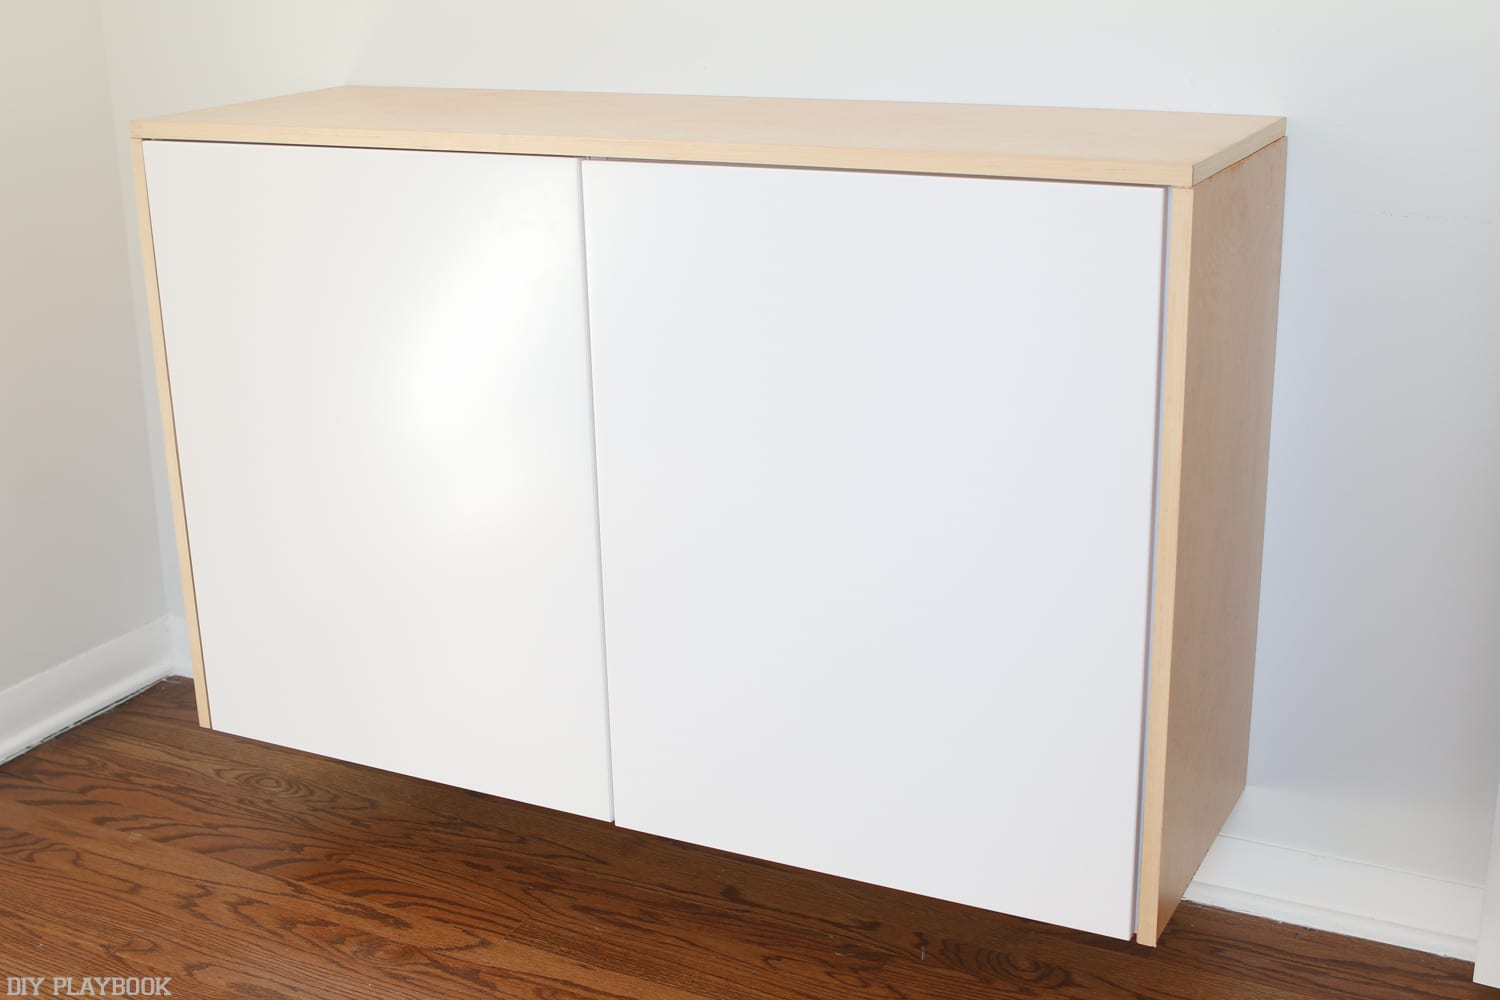 Use Cabinets: DIY fauxdenza | DIY Playbook